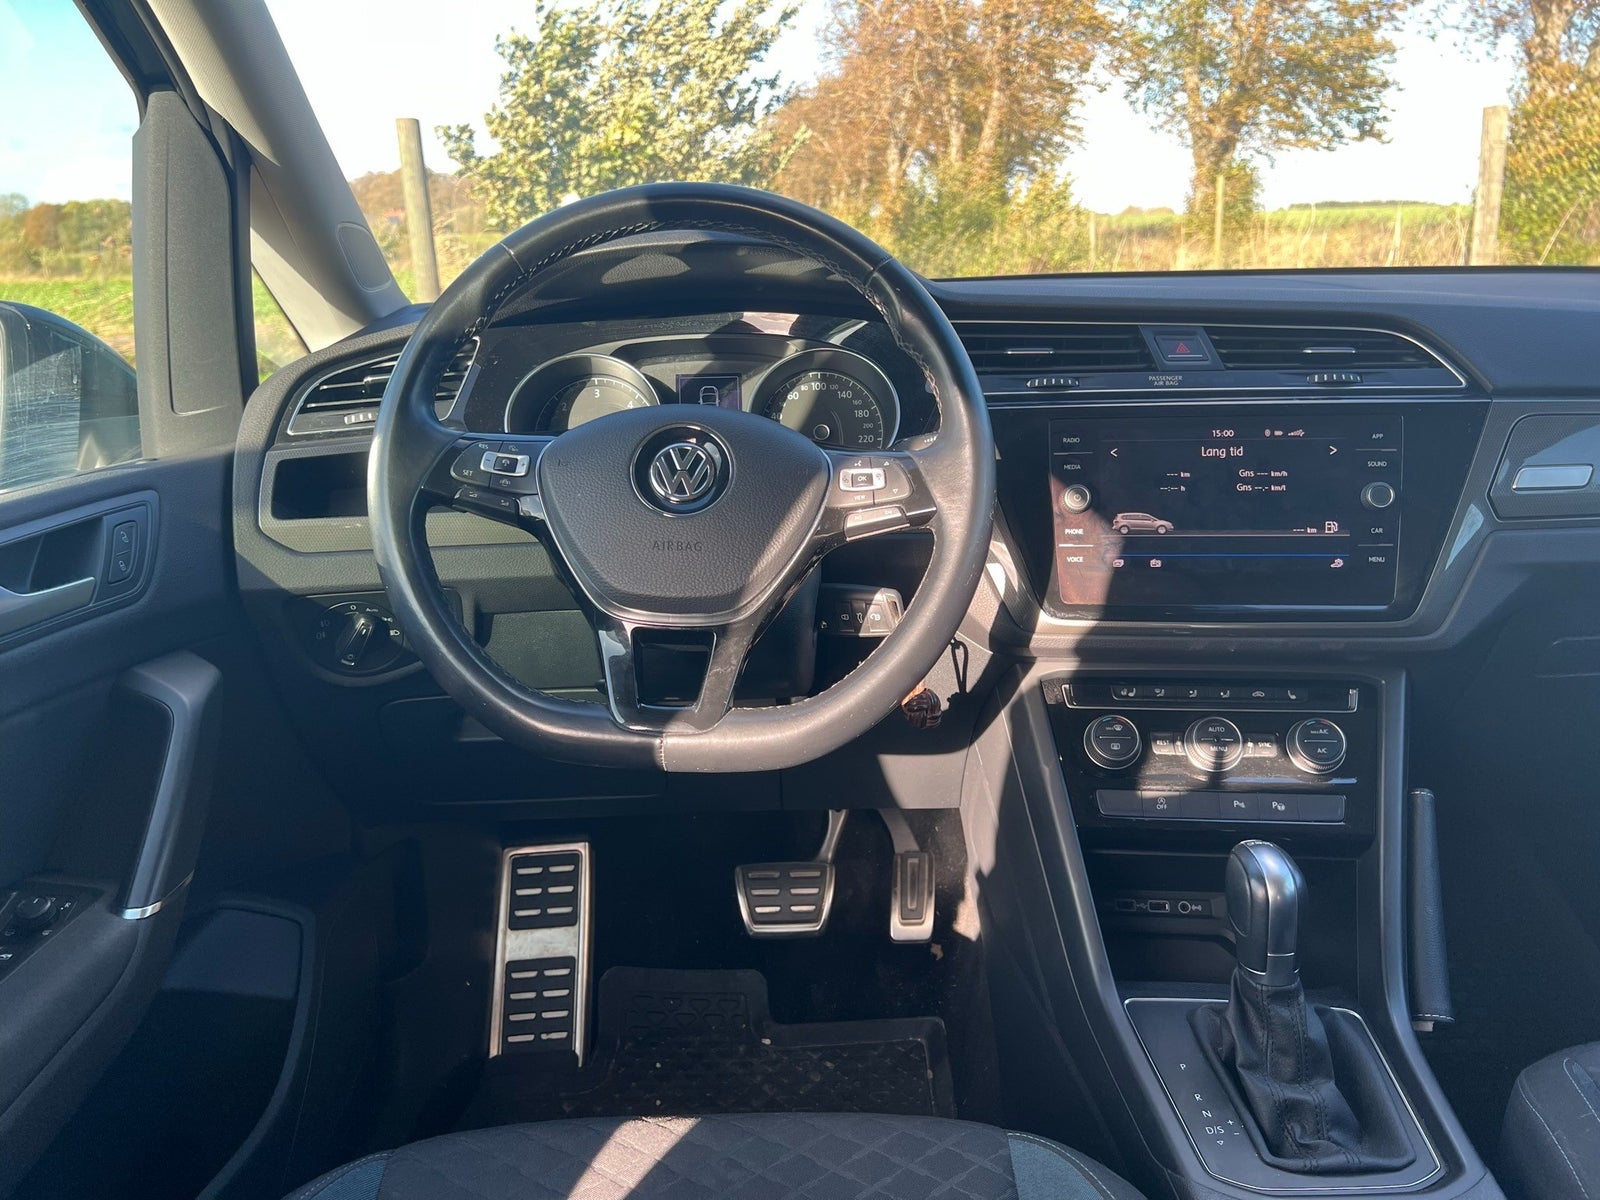 VW Touran 1,6 TDi 115 IQ.Drive 7prs Diesel modelår 2019 km